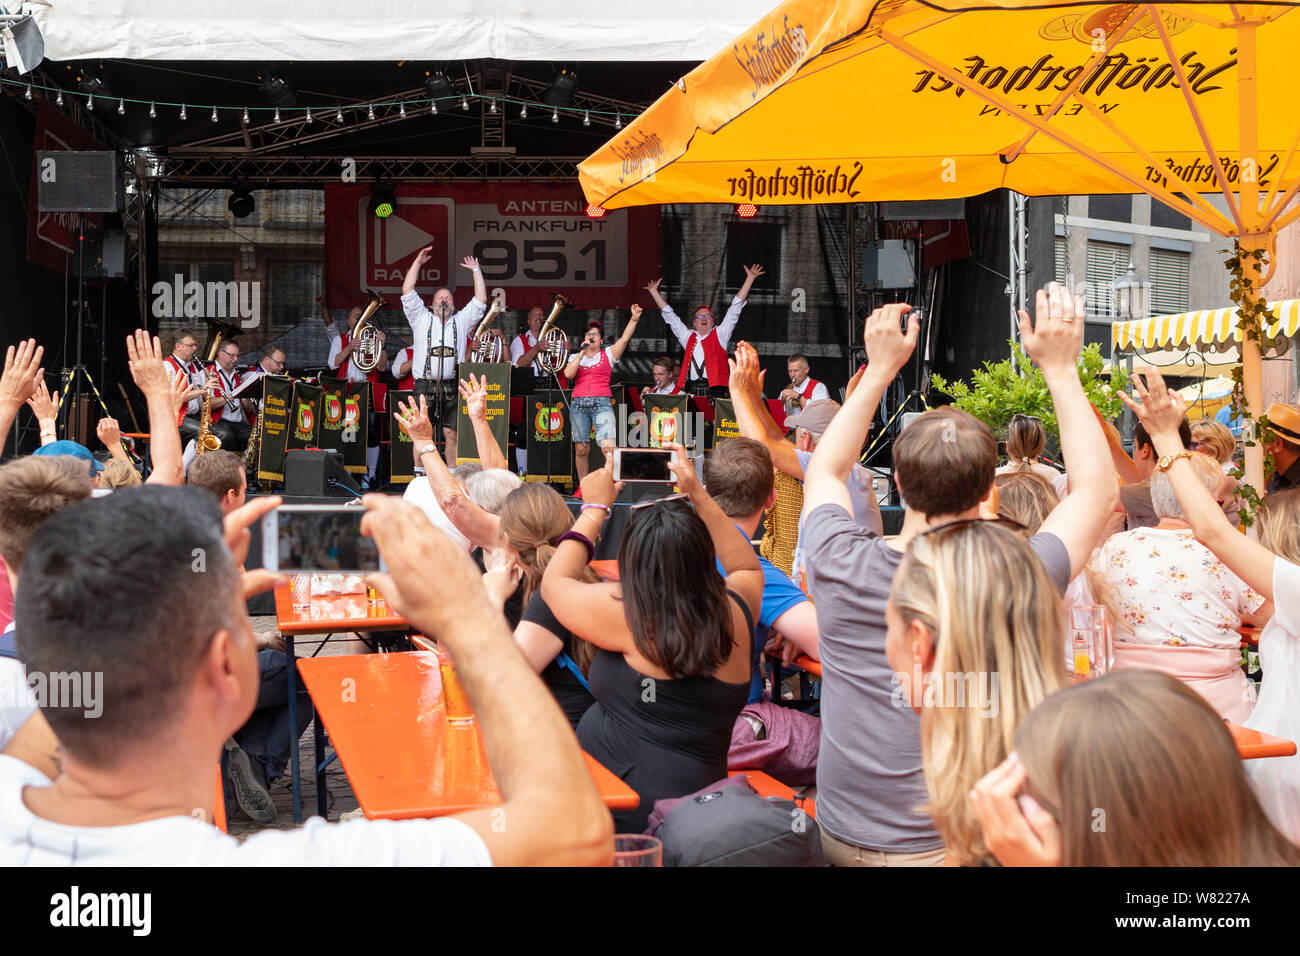 Wichtigste Festival oder Mainfest 2019, einem traditionellen deutschen Folk Festival in Römerberg, Frankfurt am Main, Deutschland, Europa Stockfoto